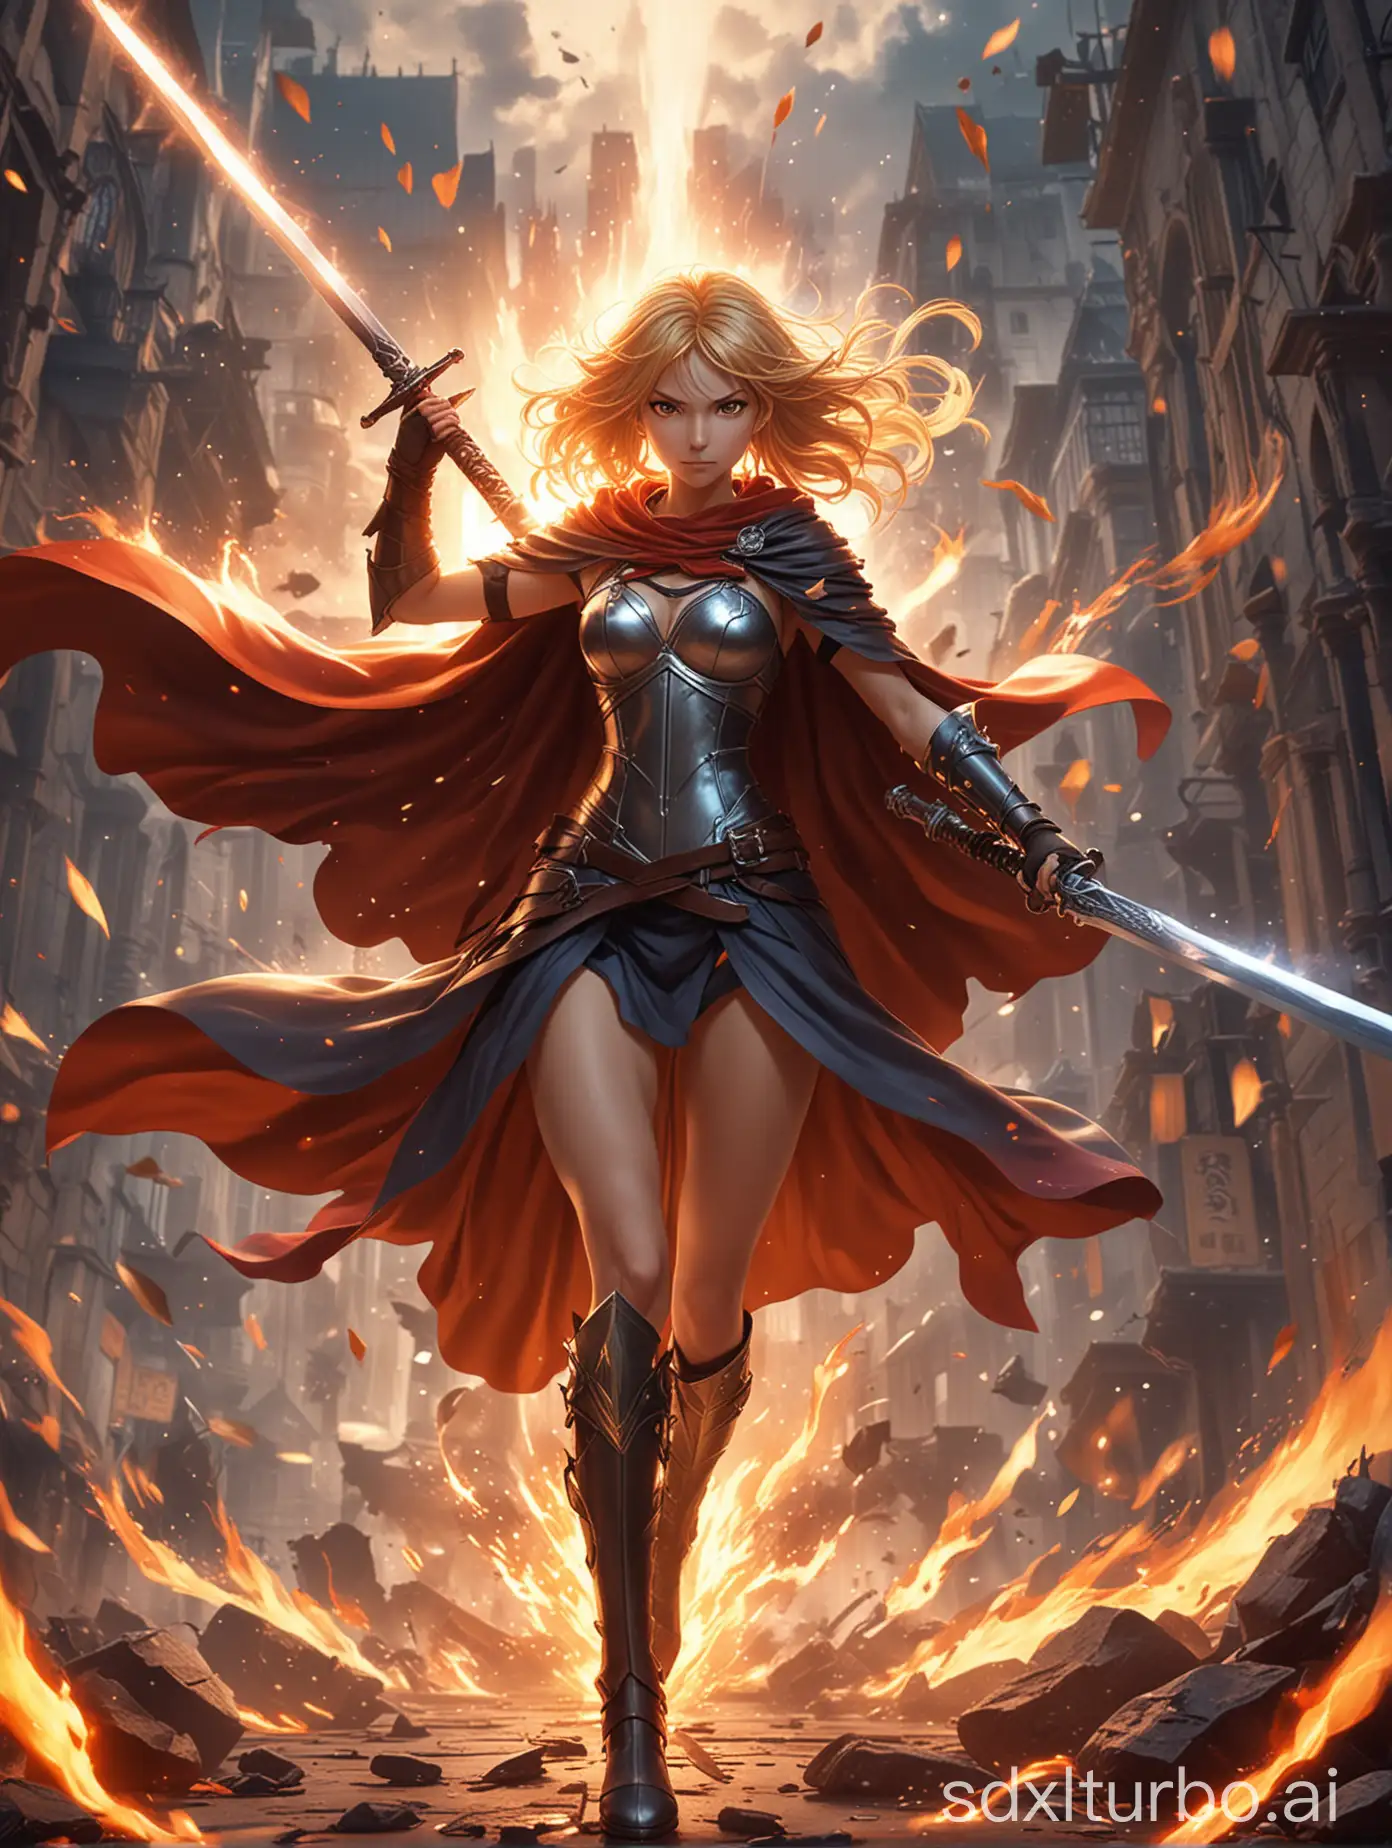 Epic-Anime-Girl-Battle-Poster-Dynamic-SwordWielding-Heroine-in-Fiery-Leap